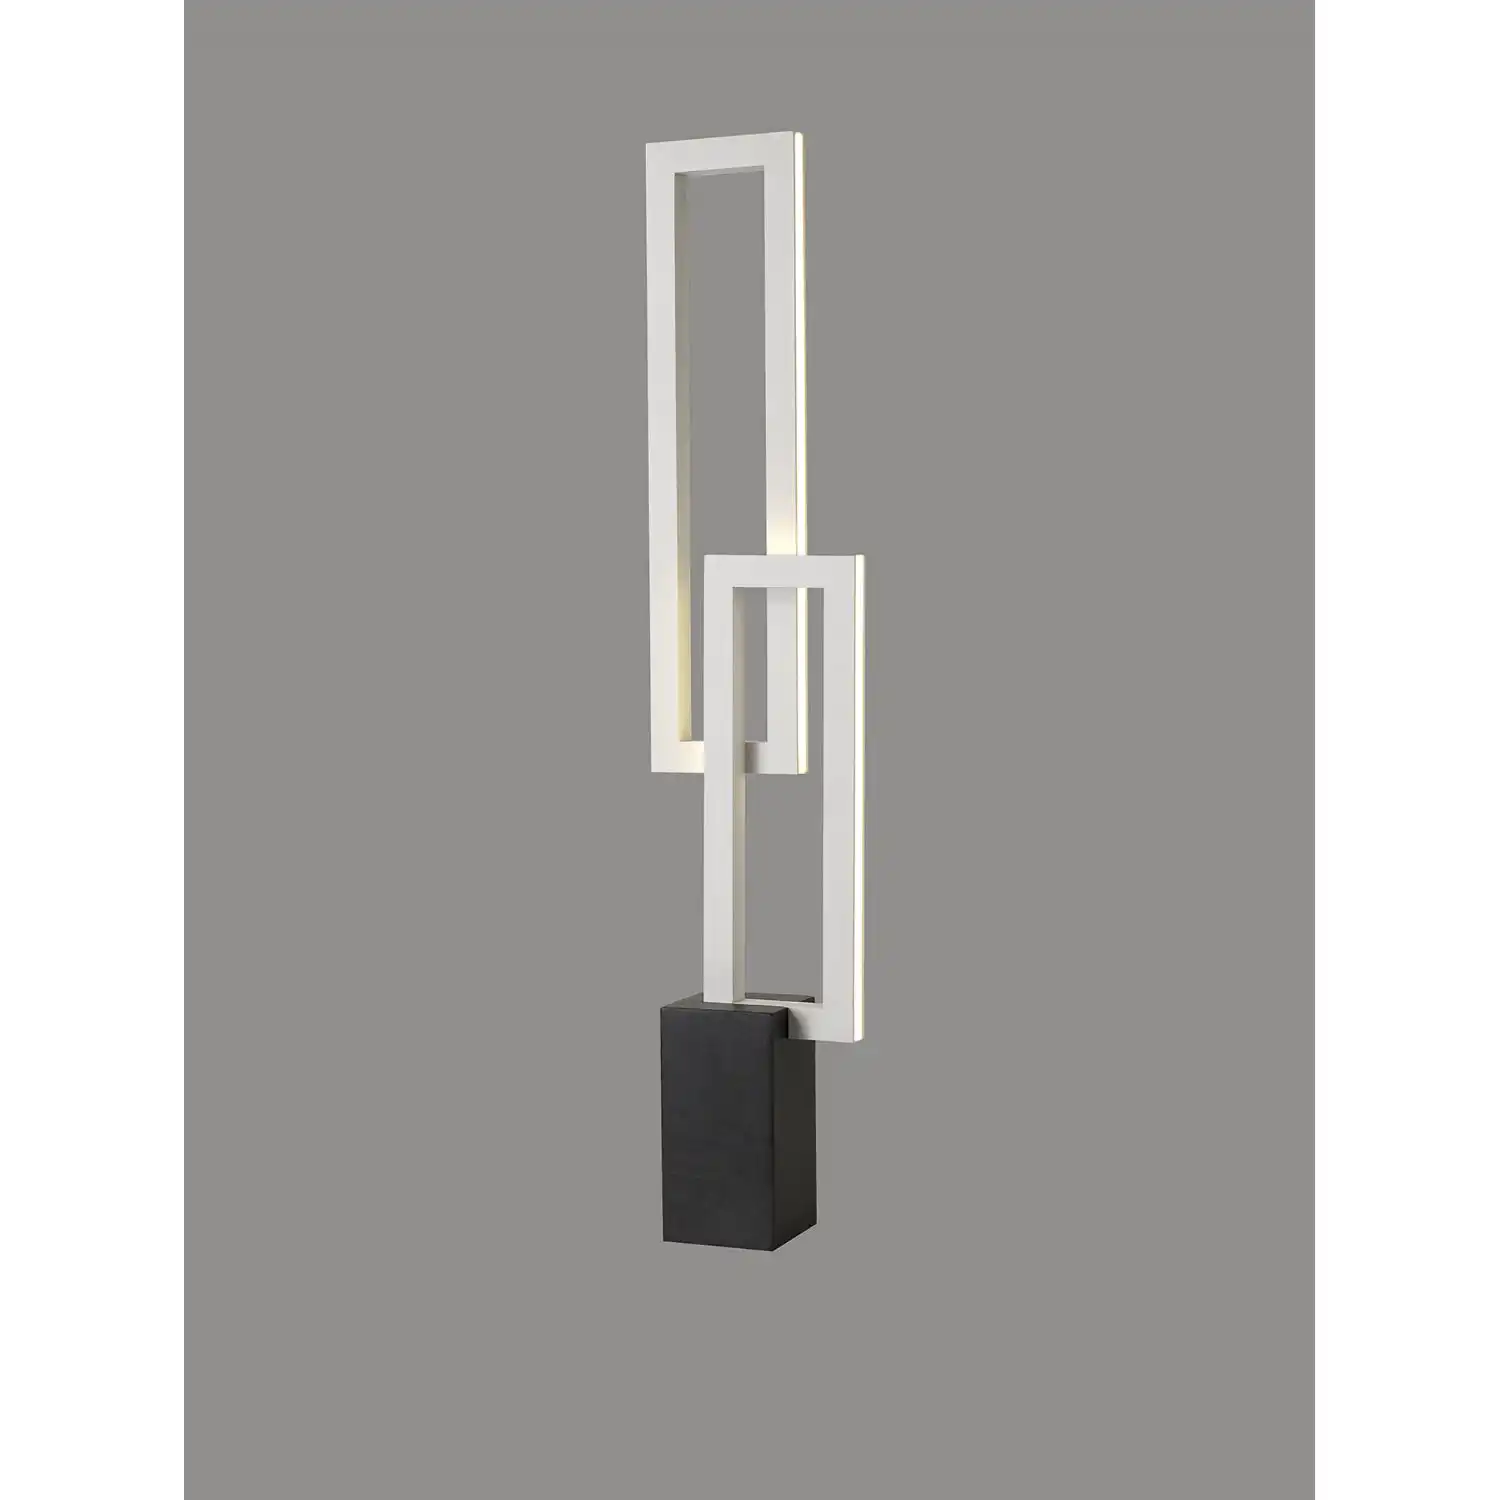 Mural Table Lamp, 18W LED, 3000K, 1380lm, IP20, Matt White, 3yrs Warranty